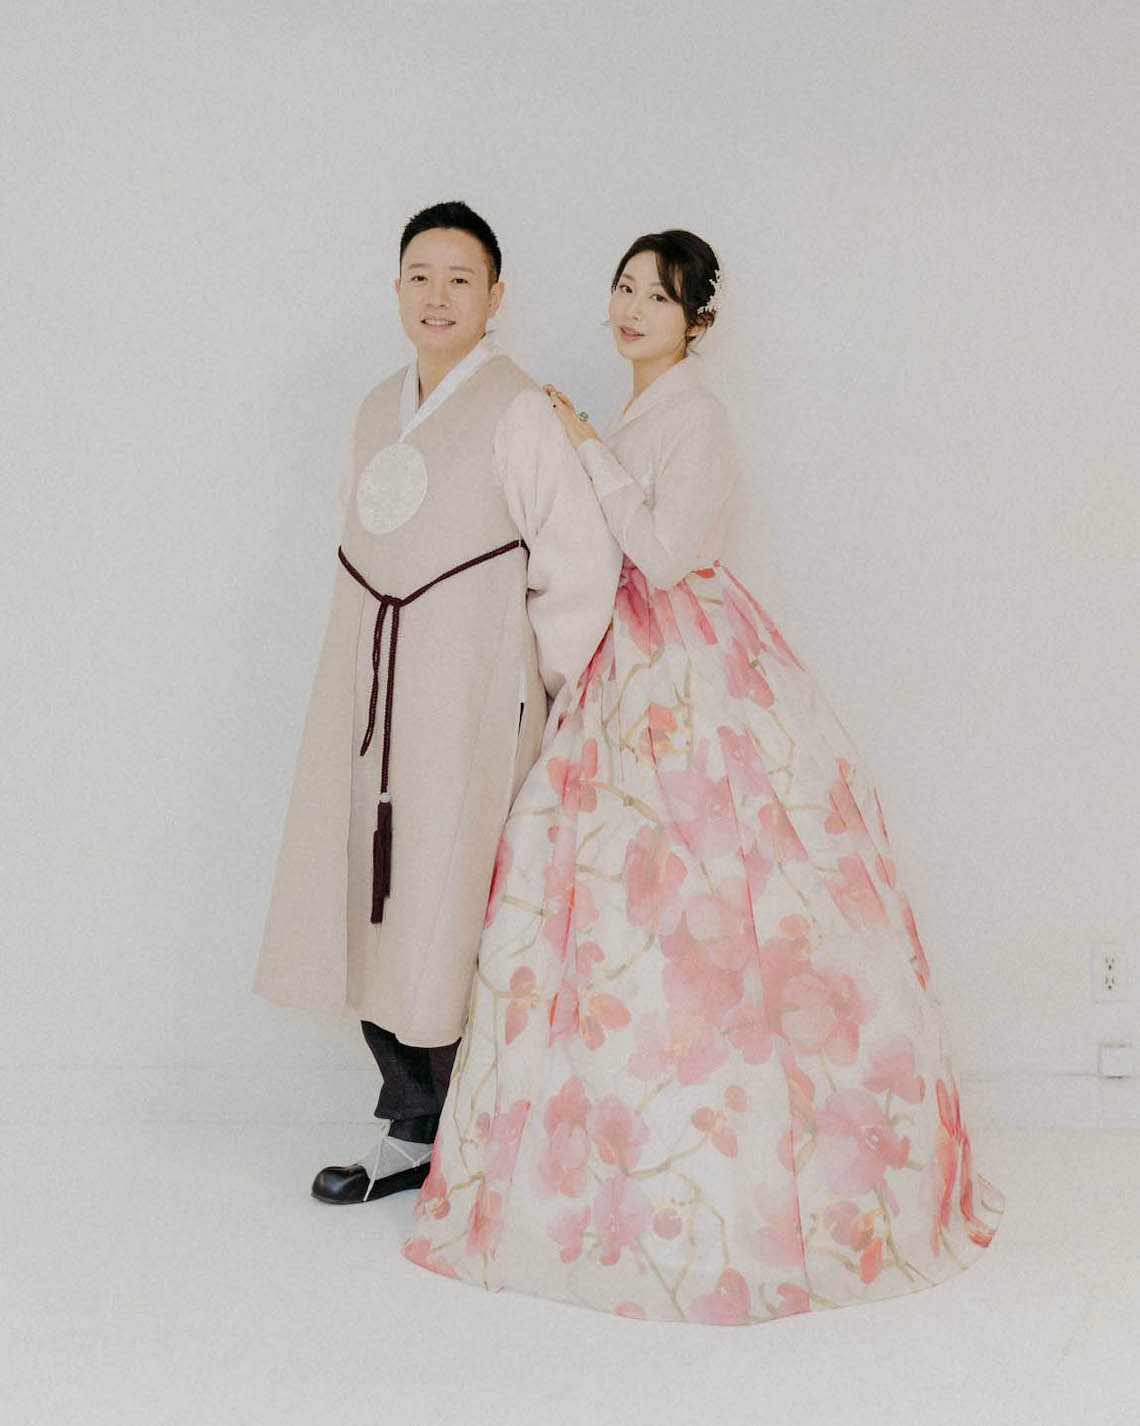 Leehwa Wedding Emma Pink Floral Wedding Hanbok Modern Korean Hanbok Wedding Dresses Bridal Musings 2 - 15 chiếc váy cưới Hanbok Hàn Quốc tuyệt đẹp và hiện đại